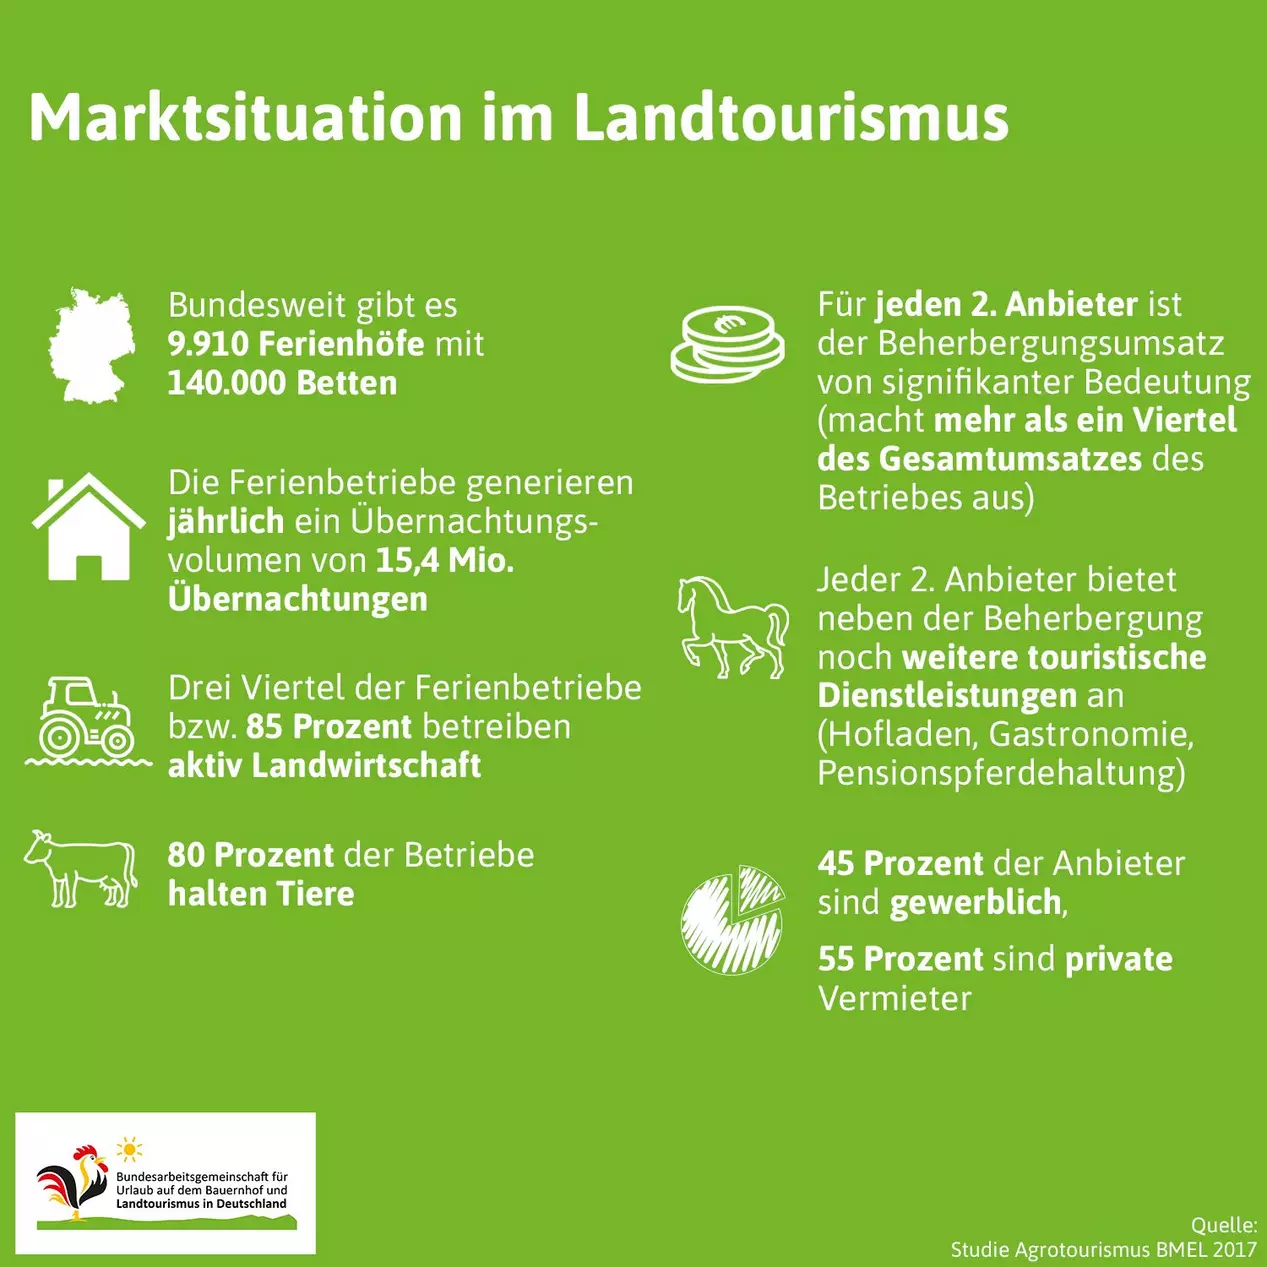 Zahlen und Fakten zum Landtourismus in Deutschland im Überblick